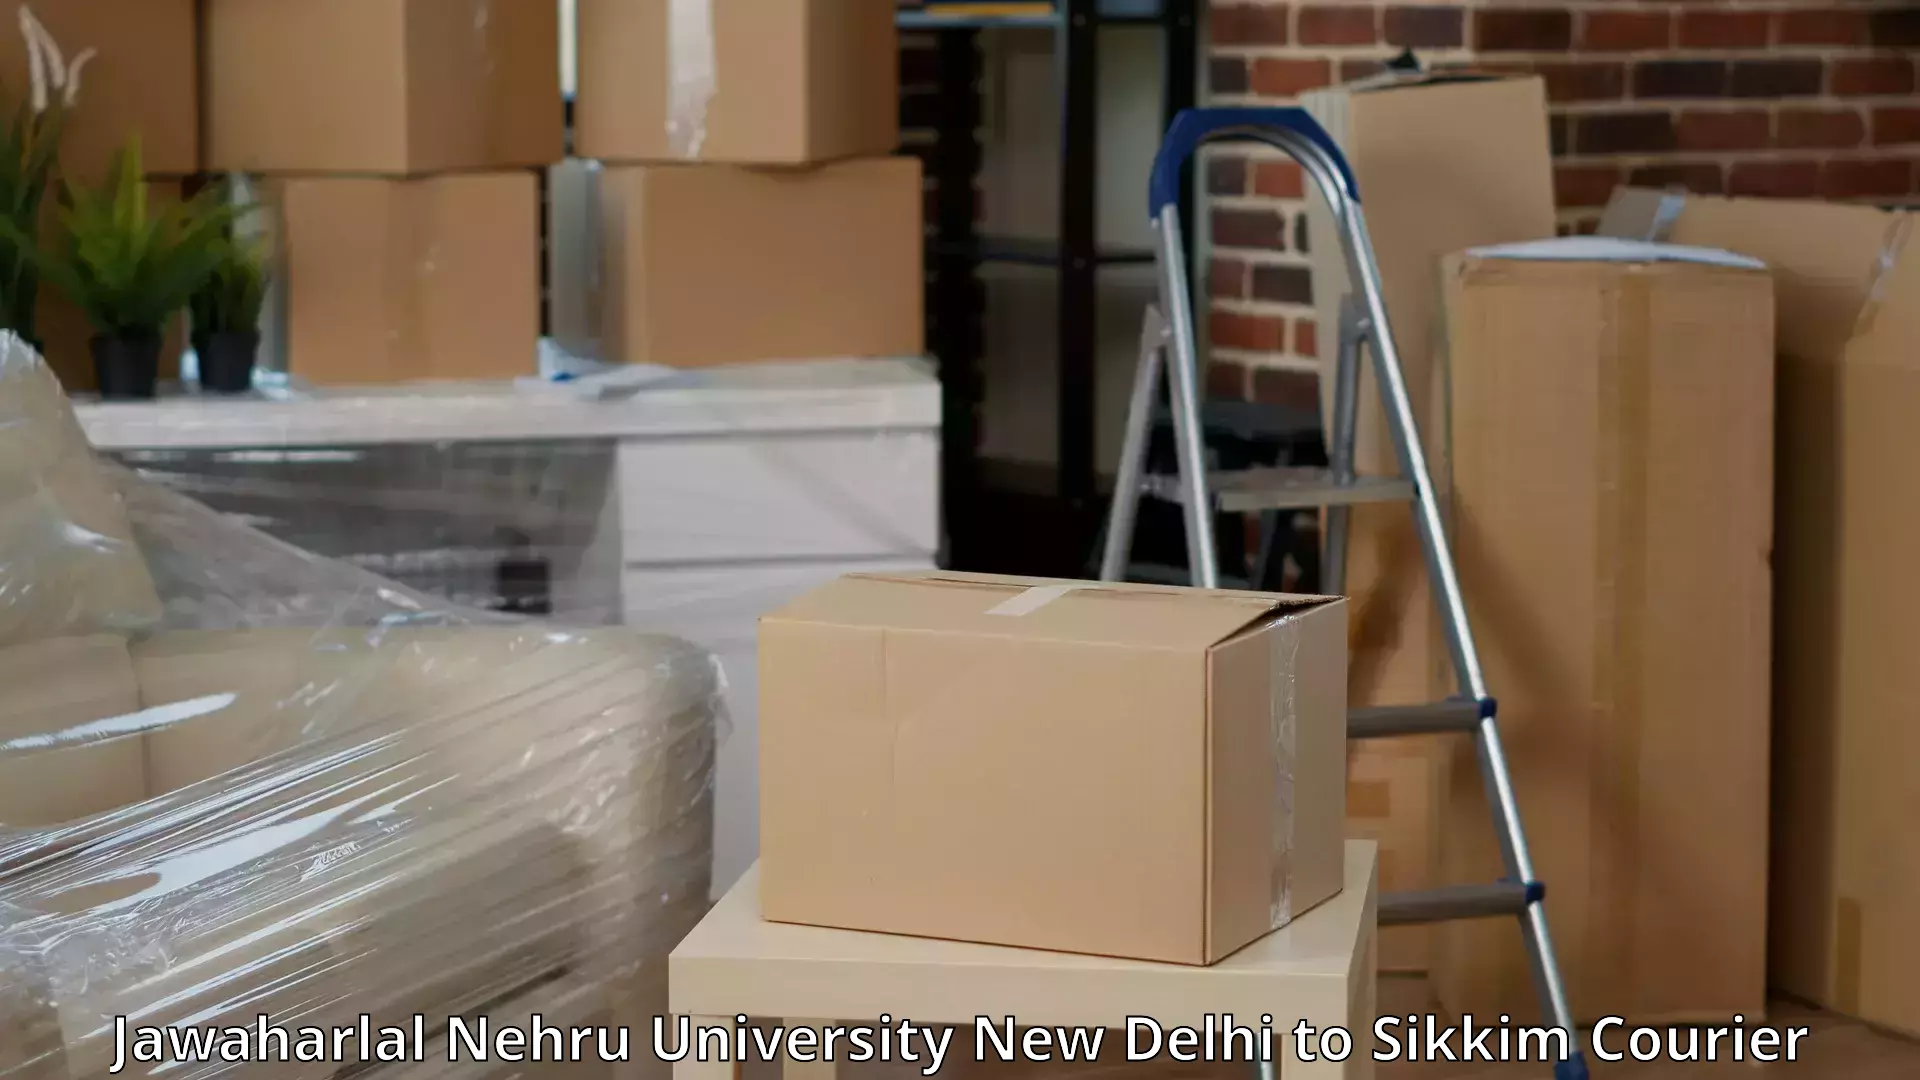 Door-to-door relocation services Jawaharlal Nehru University New Delhi to Pelling